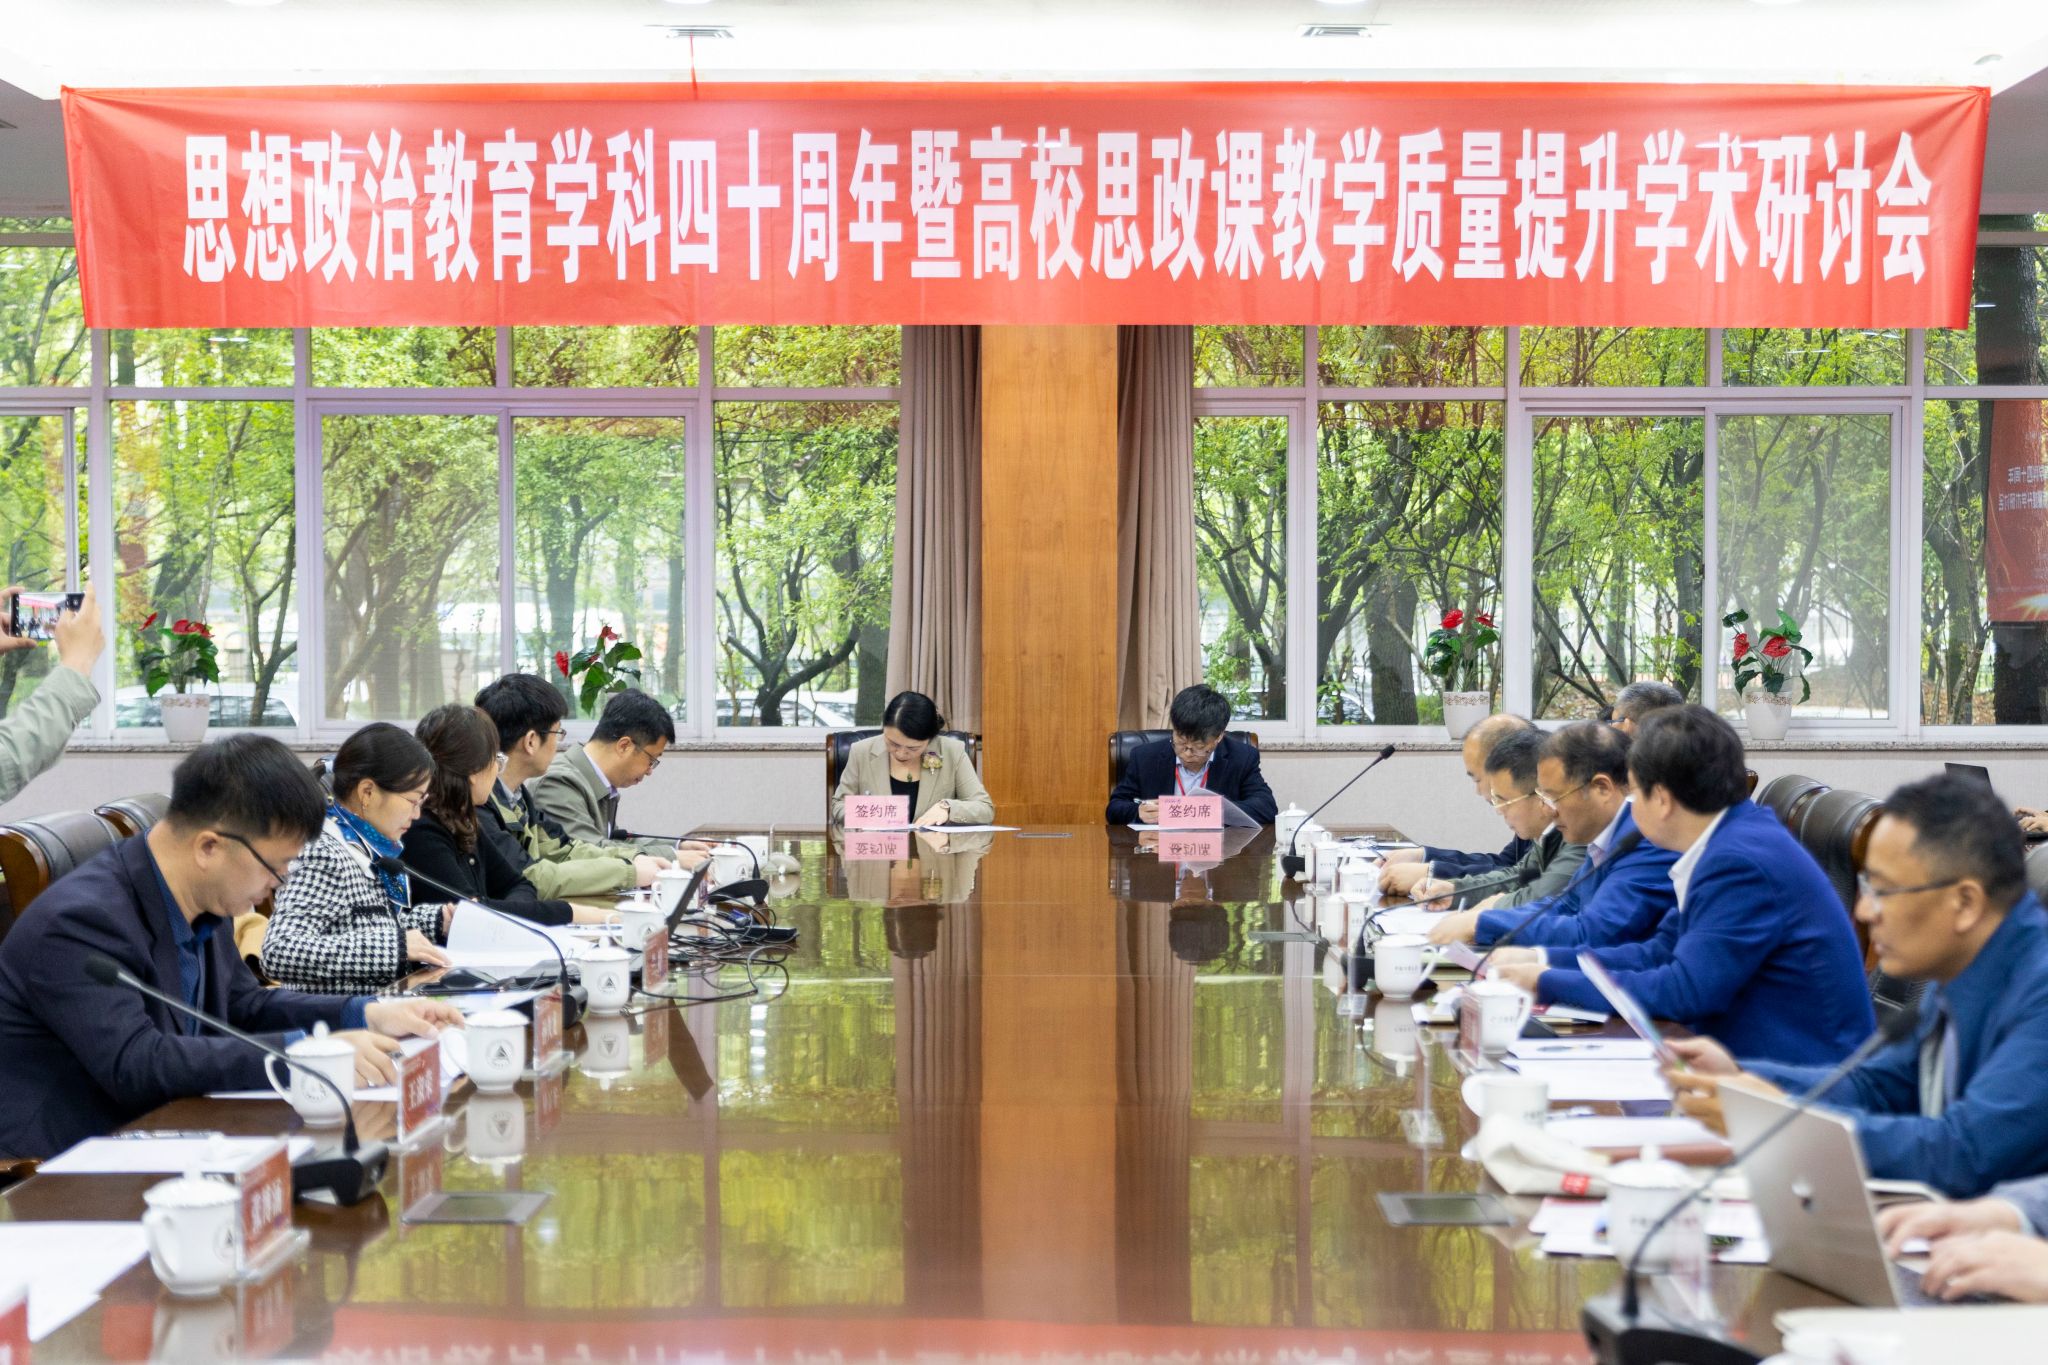 据悉,中国计量大学马克思主义中国化研究与传播中心新展馆升级改造后